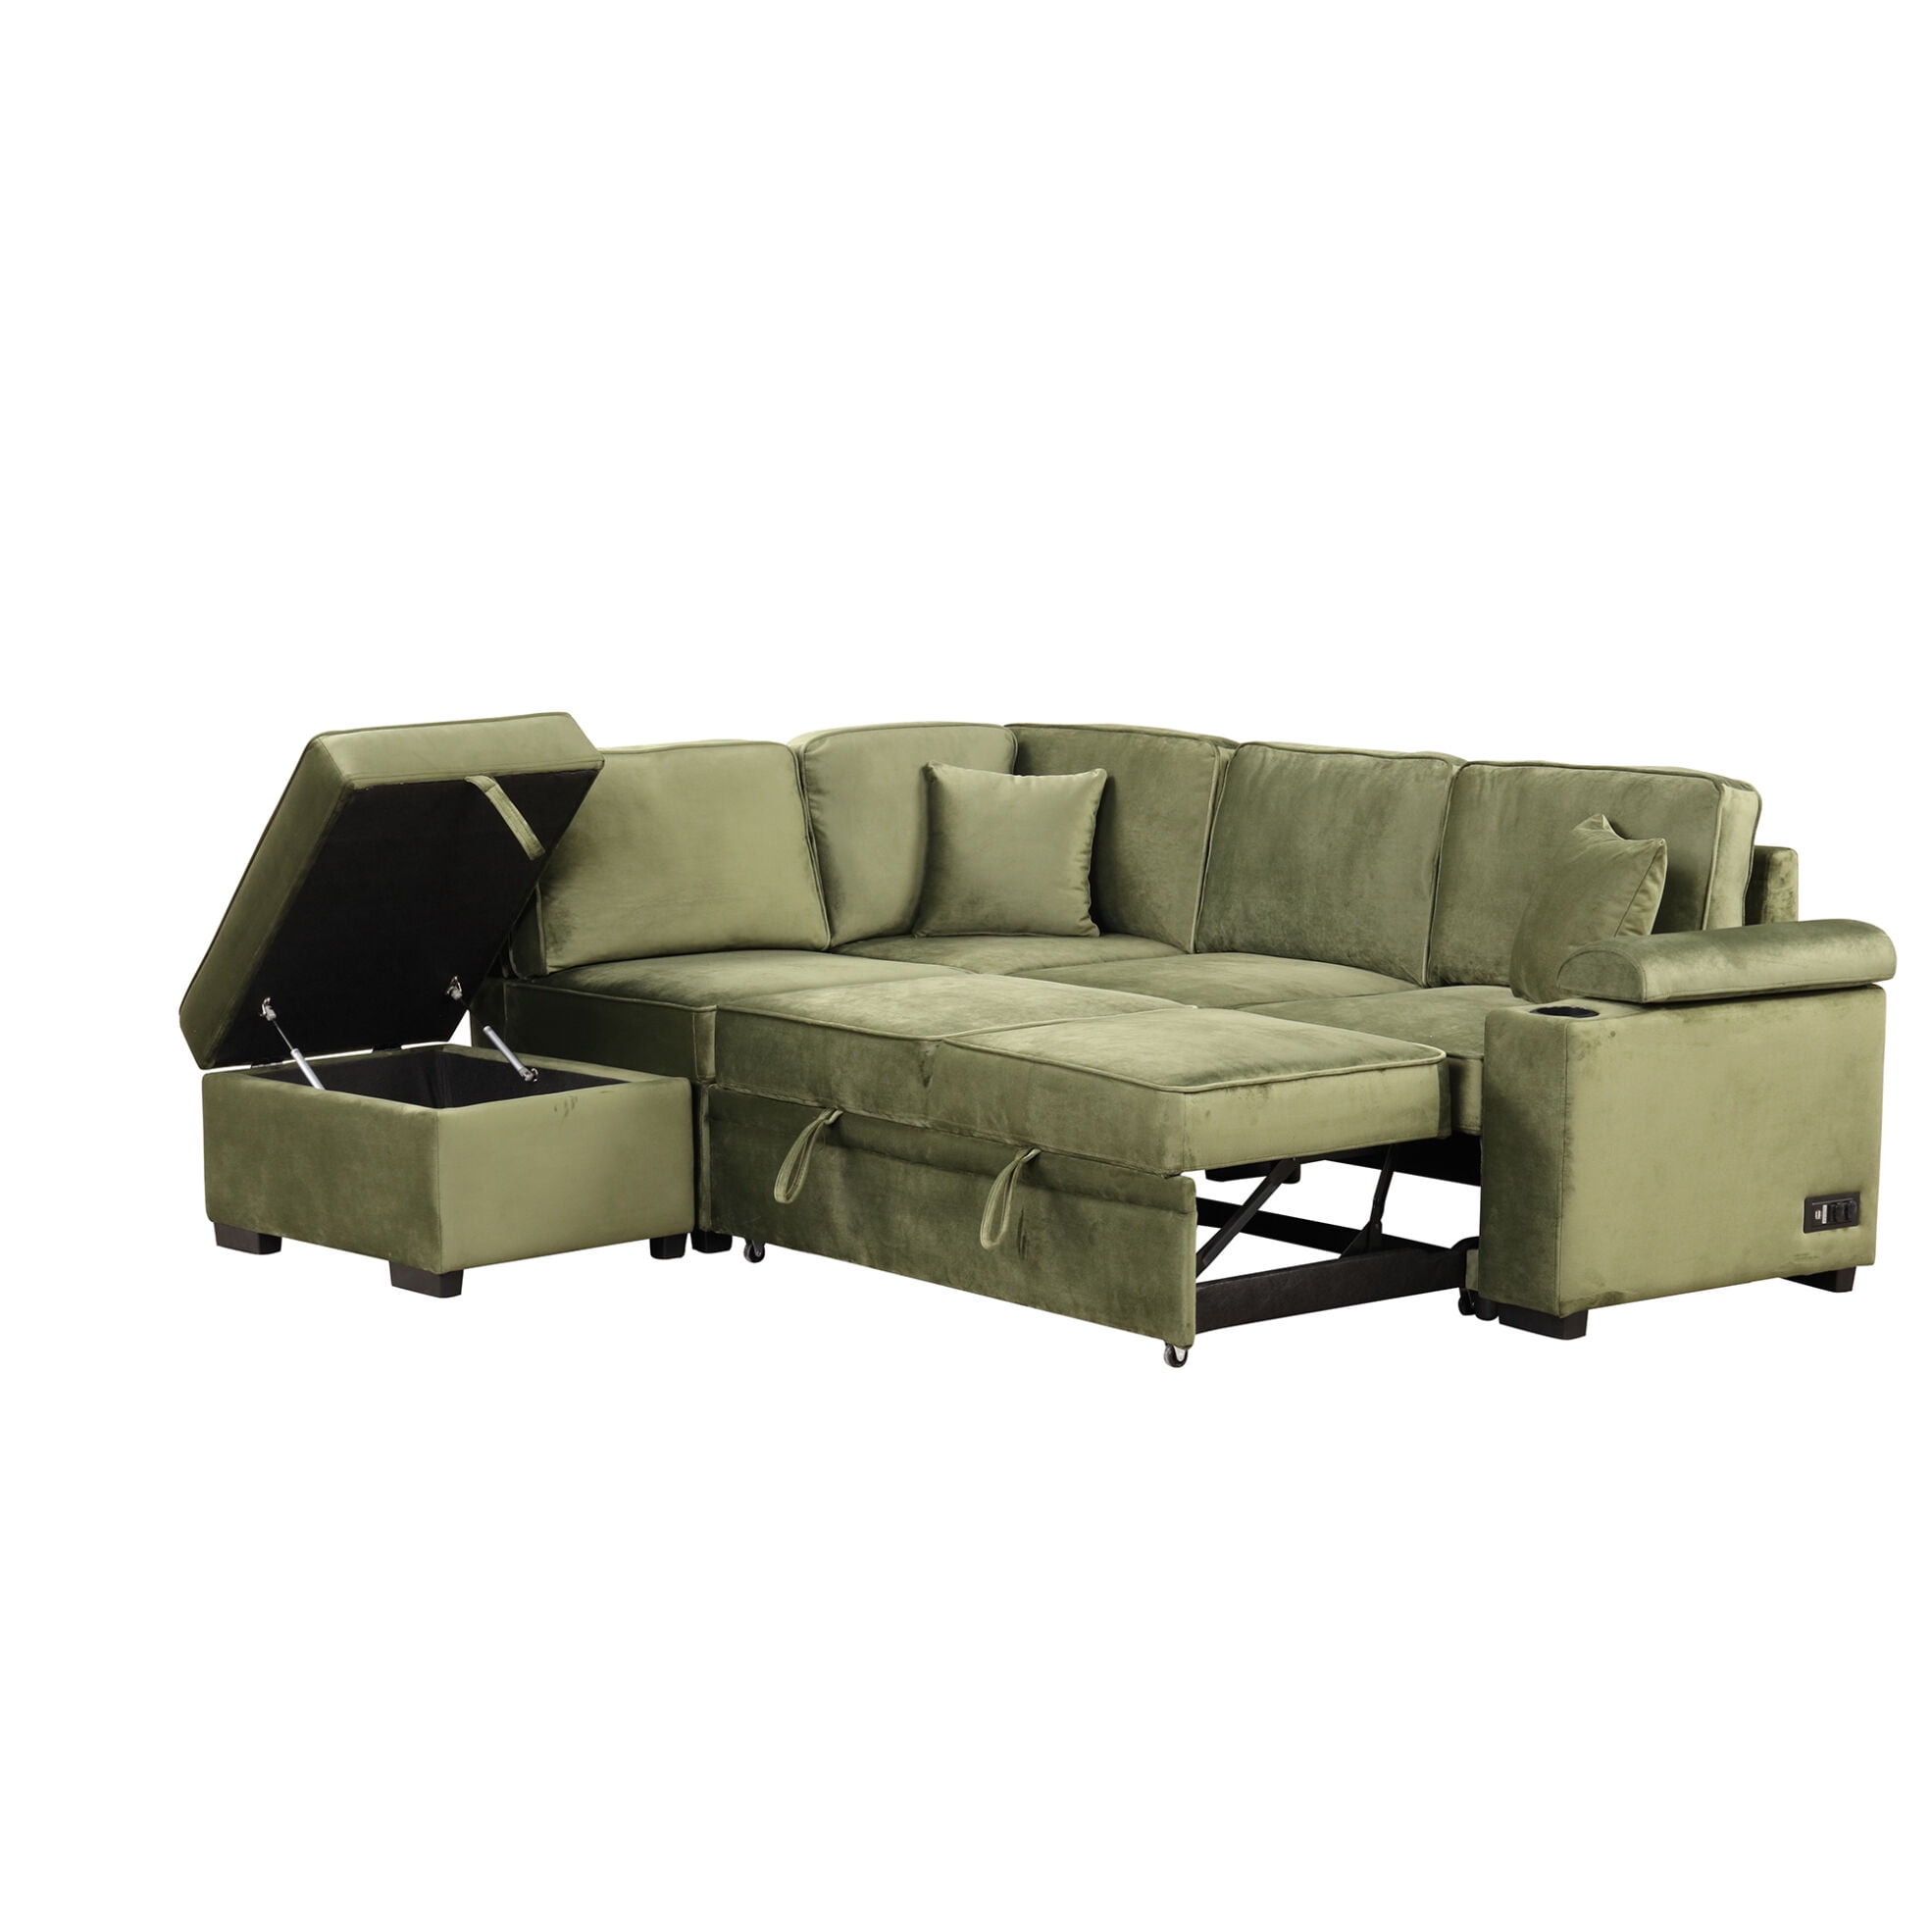 Nestfair 87.4 in. Beige Linen Upholstered L-Shaped Sleeper Sofa